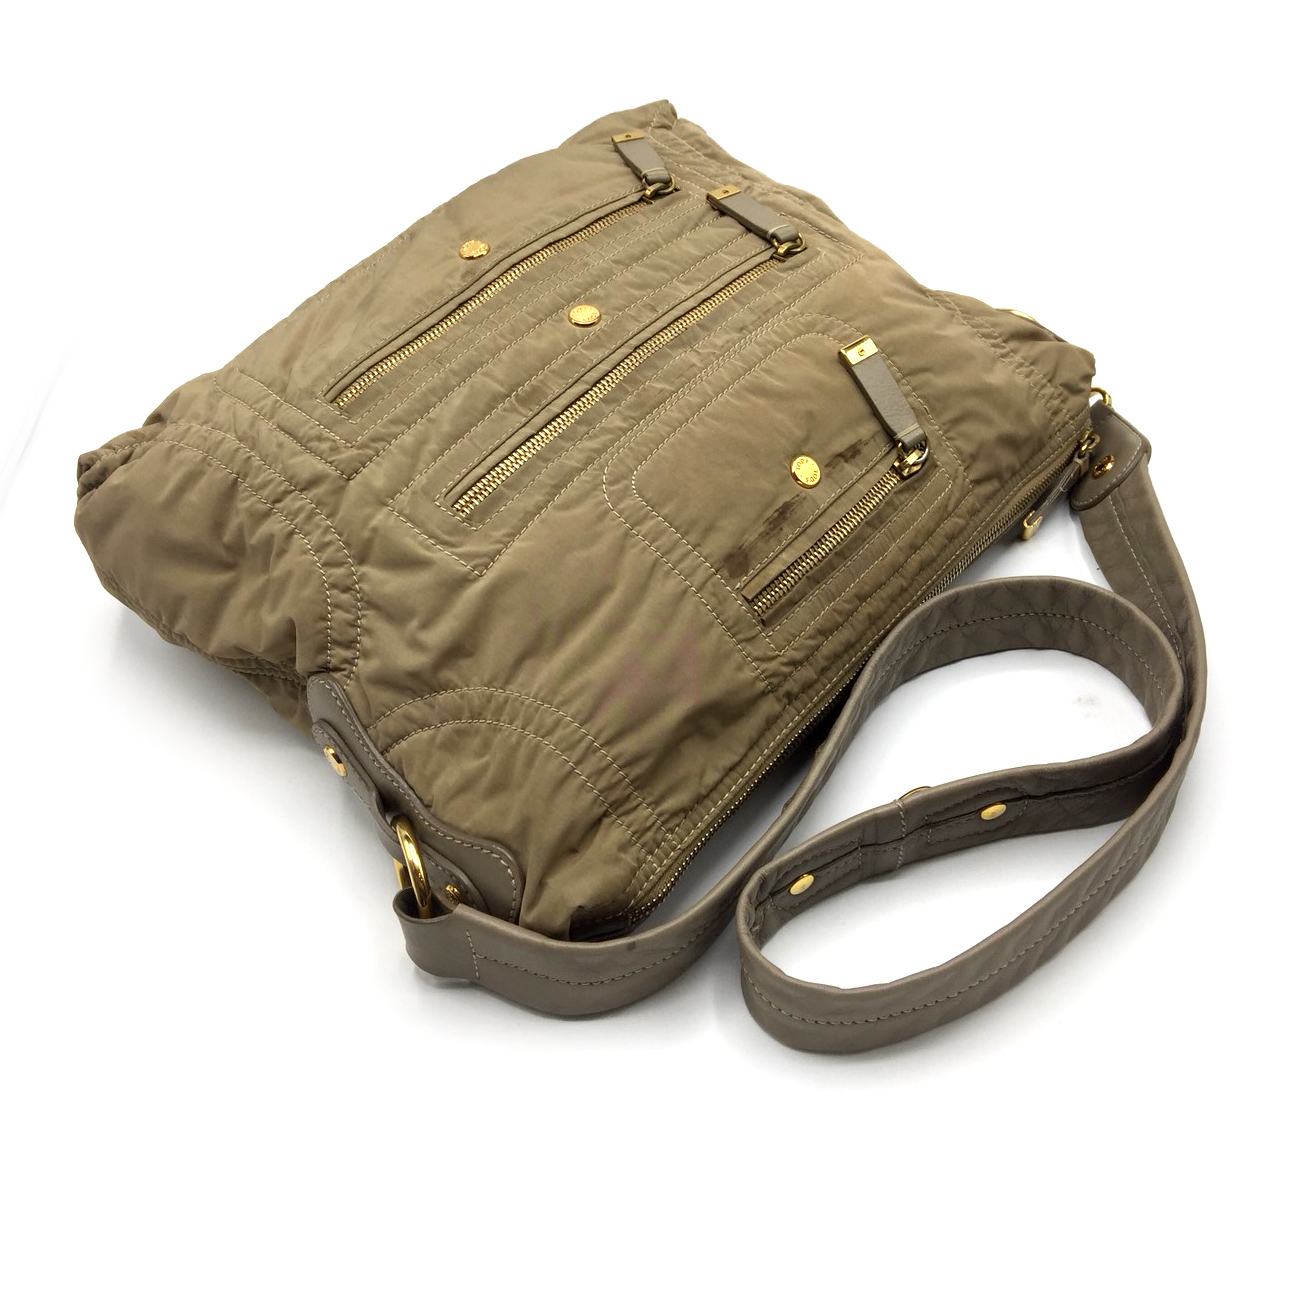 Used TOD'S Messenger Bag in Beige Nylon GHW